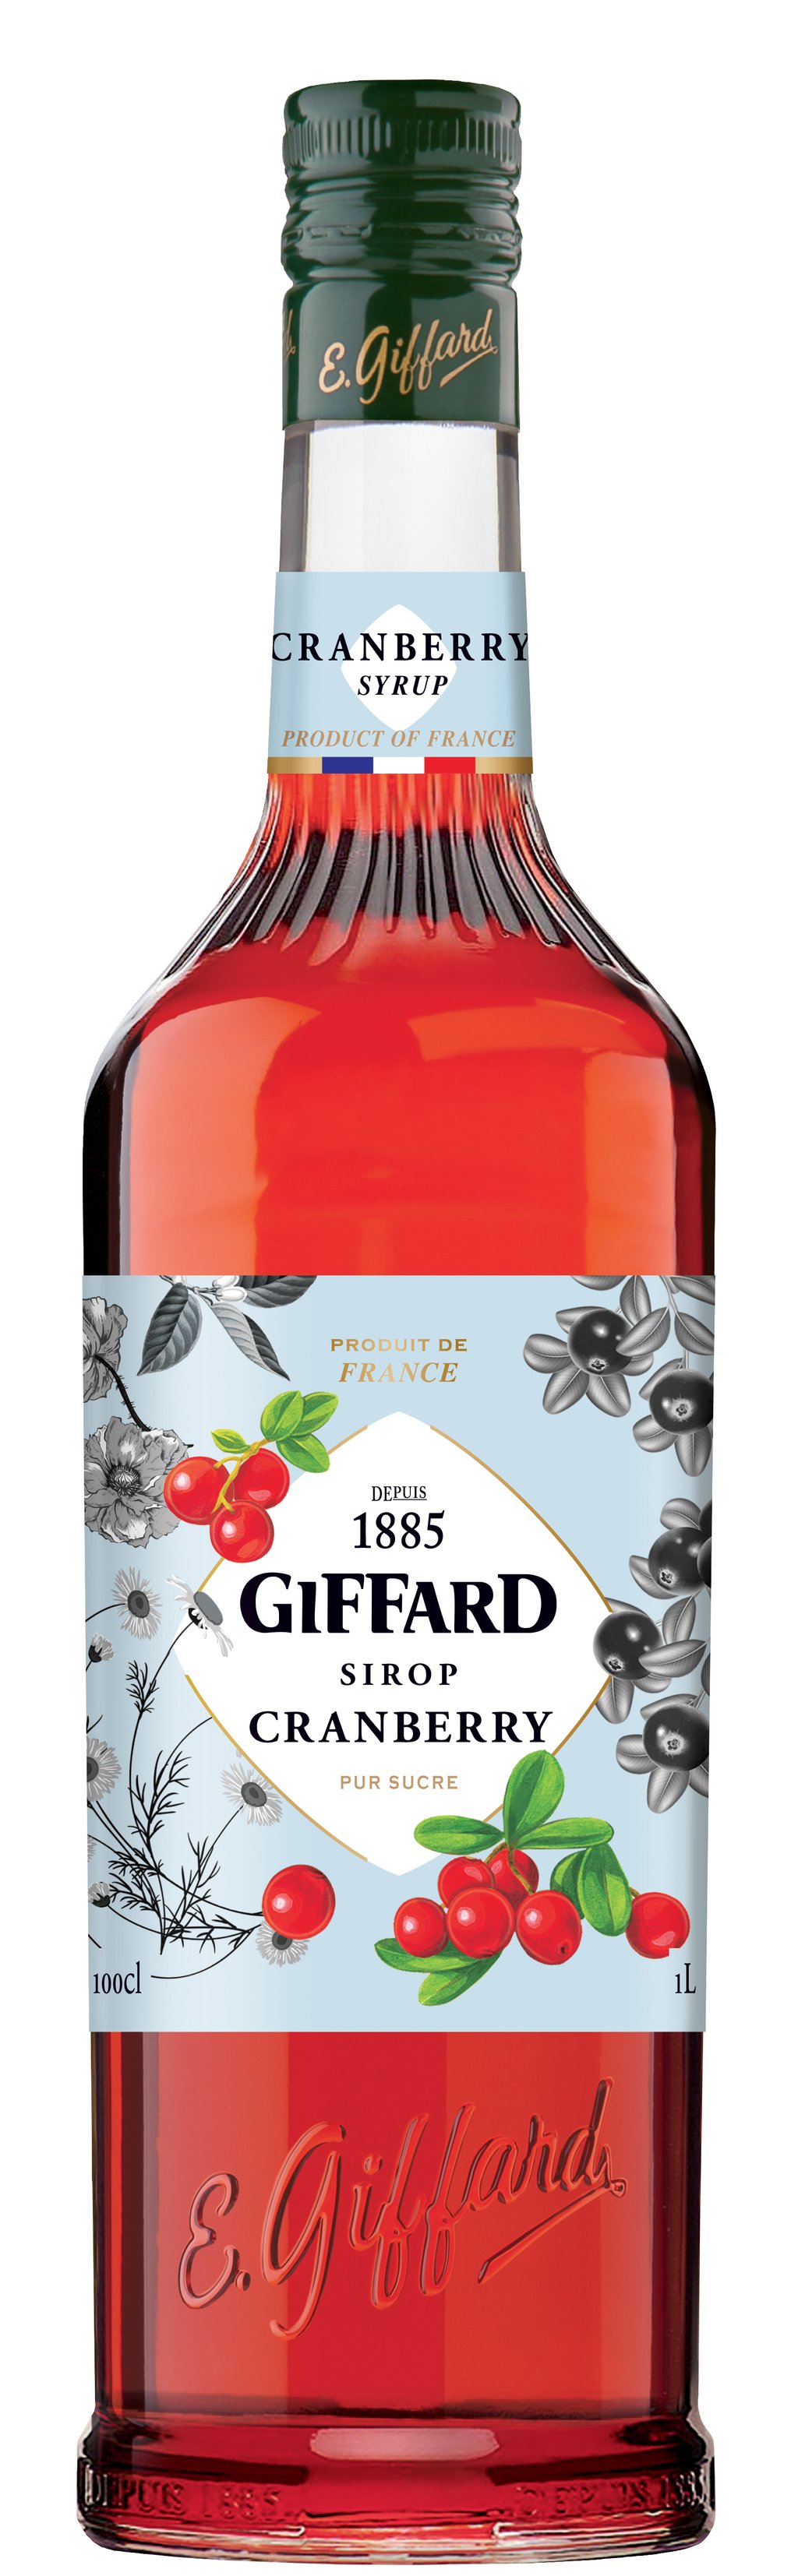 Giffard Cranberry Syrup t